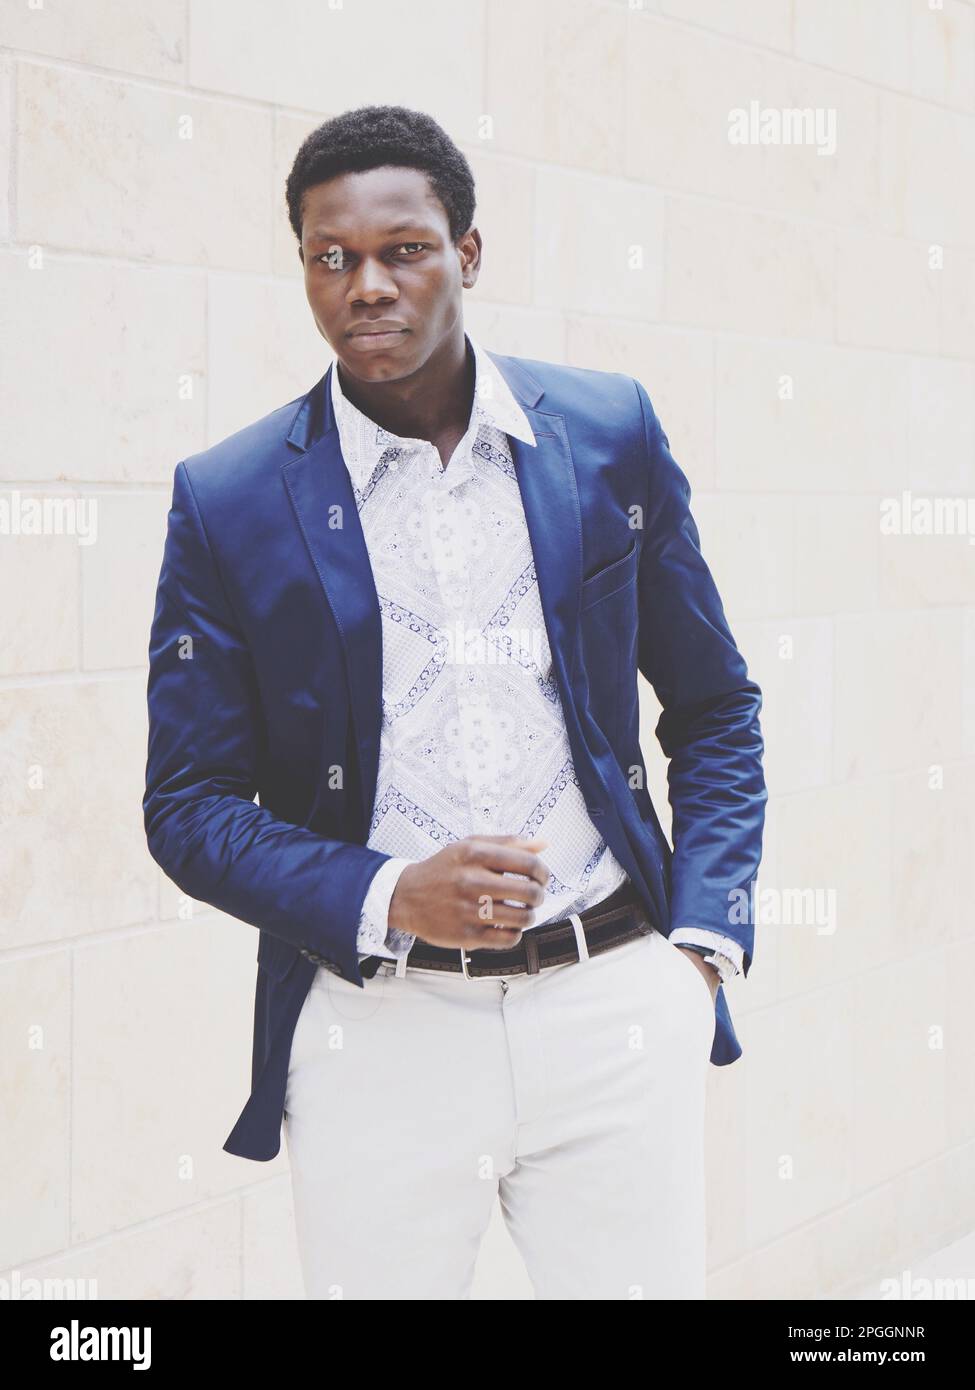 jeune homme d'ascendance africaine portant une mode chic et décontractée pour homme. filtre de couleur décoloré Banque D'Images